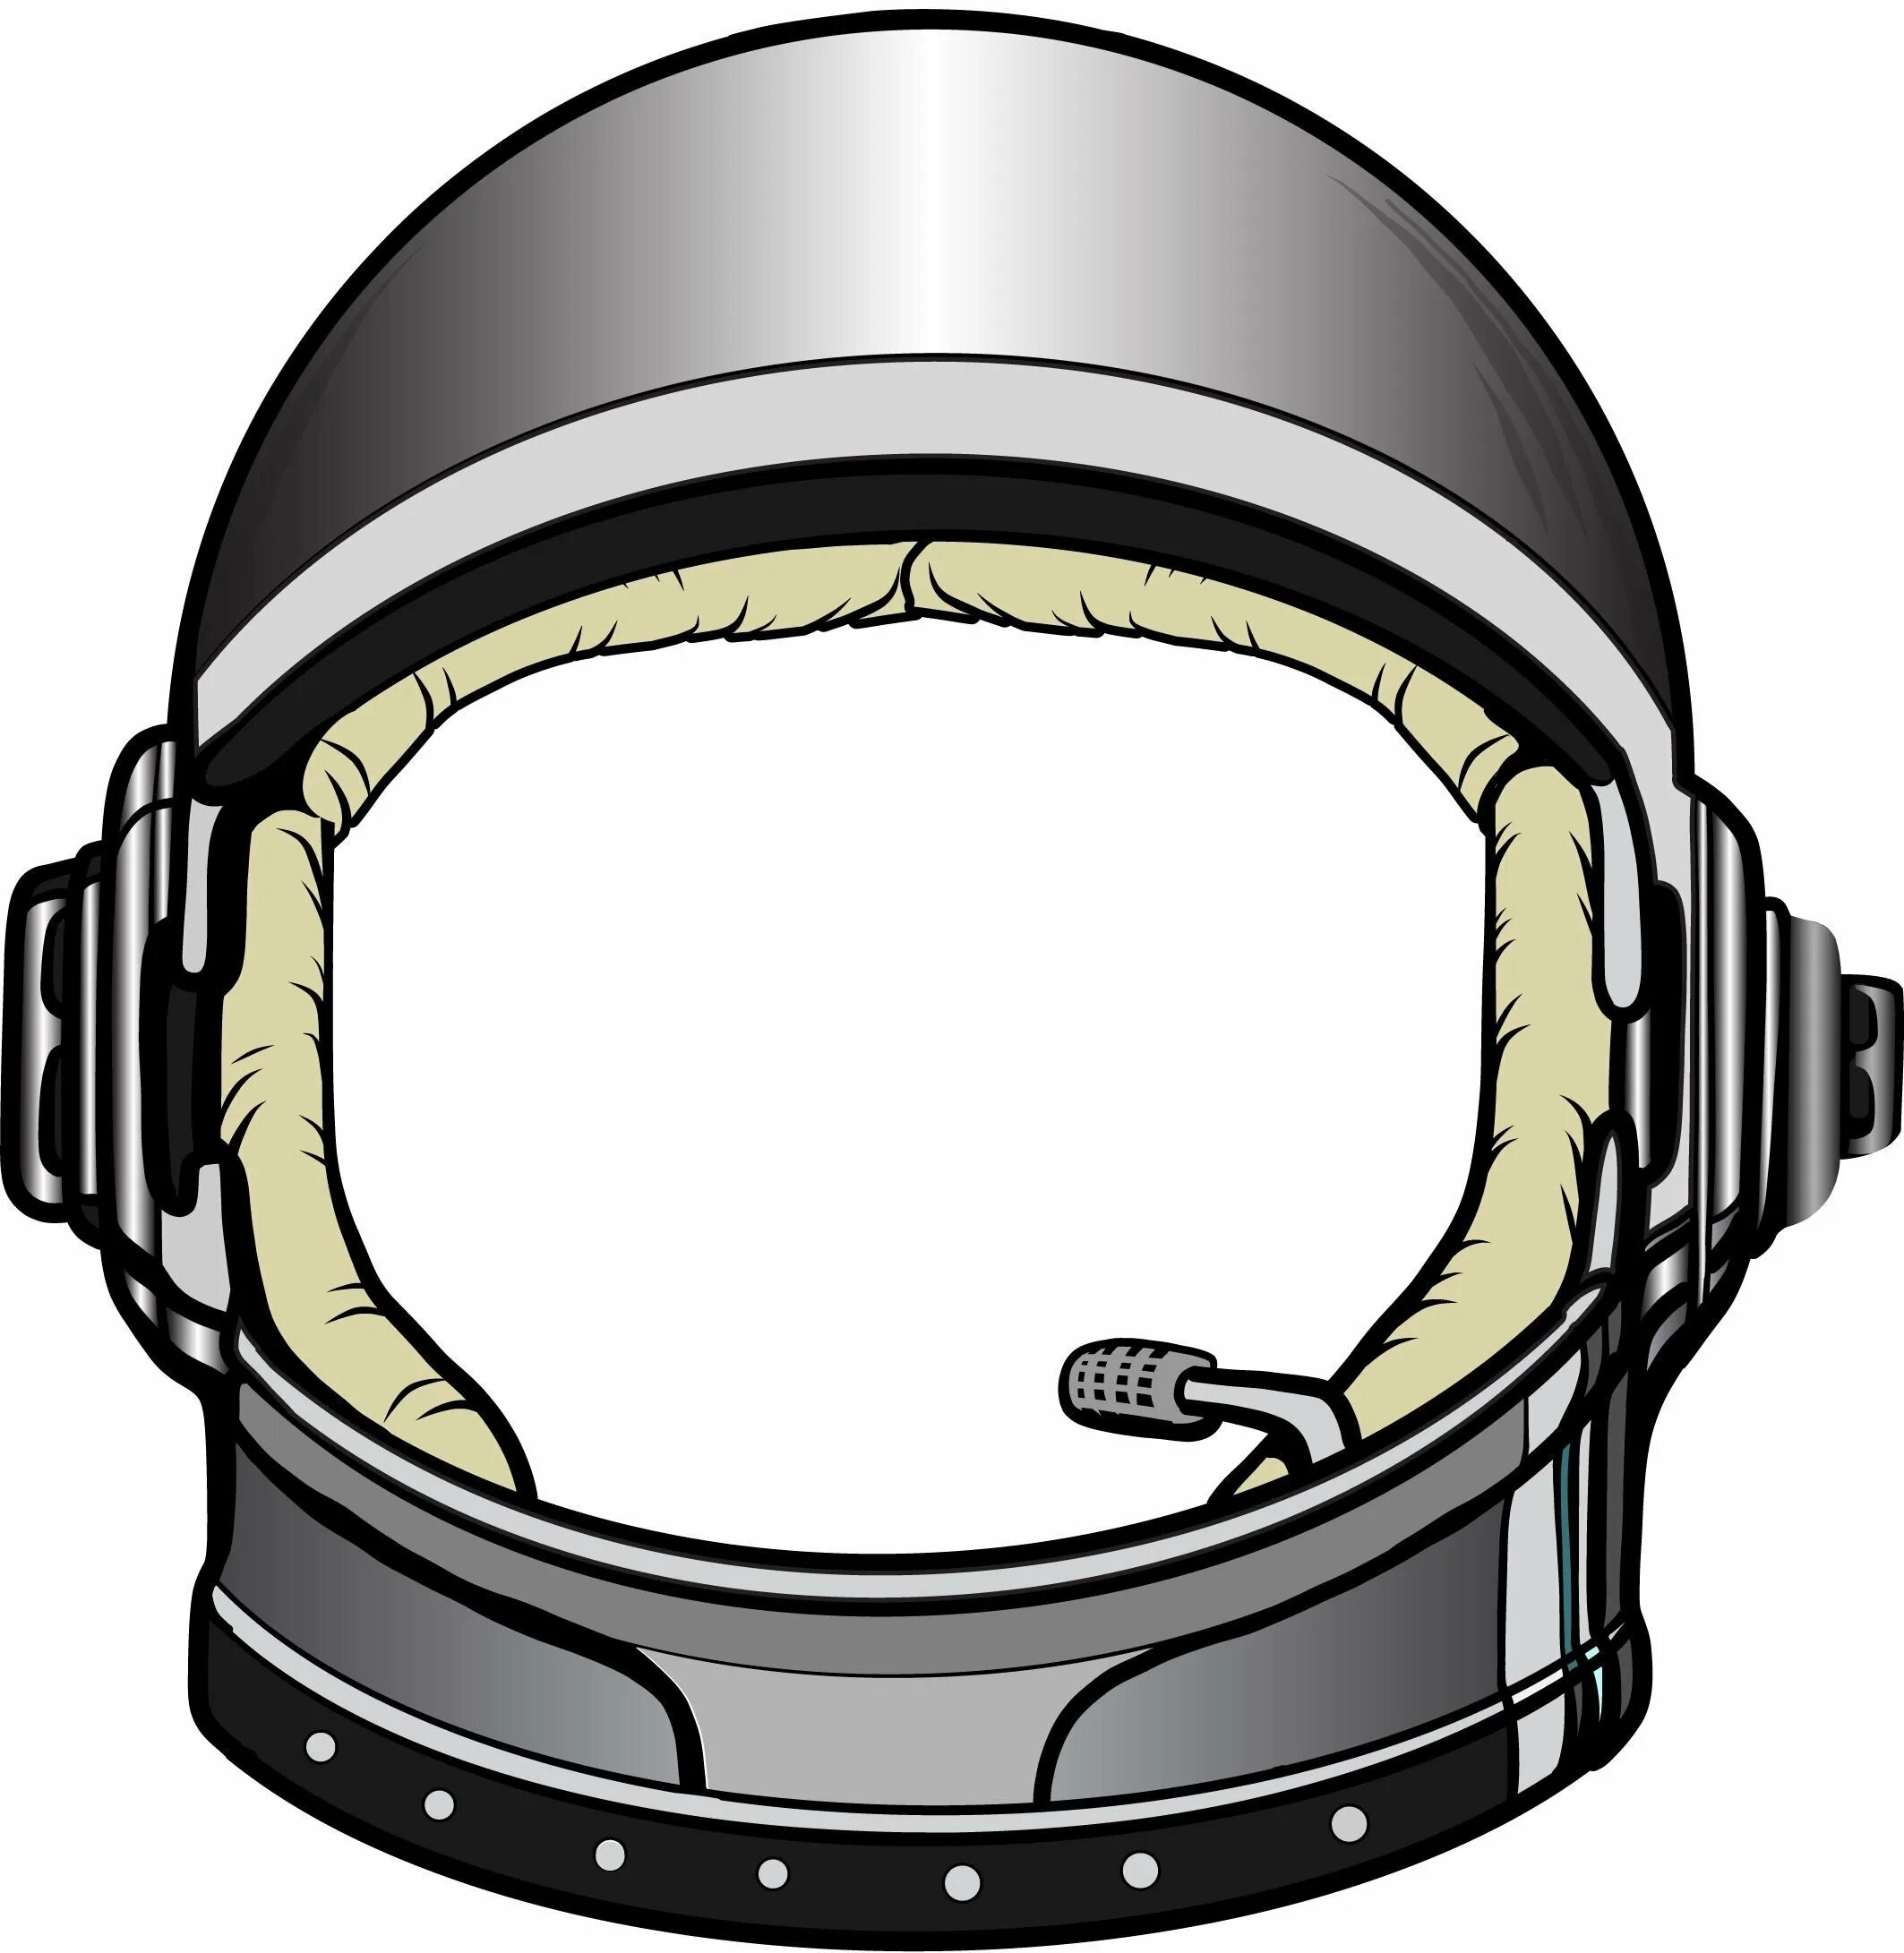 Шлем Astronaut Helmet. Шлем скафандра Космонавта. Шлем Космонавта SD IFI. Отражение в шлеме Космонавта сбоку. Шаблон маски космонавта